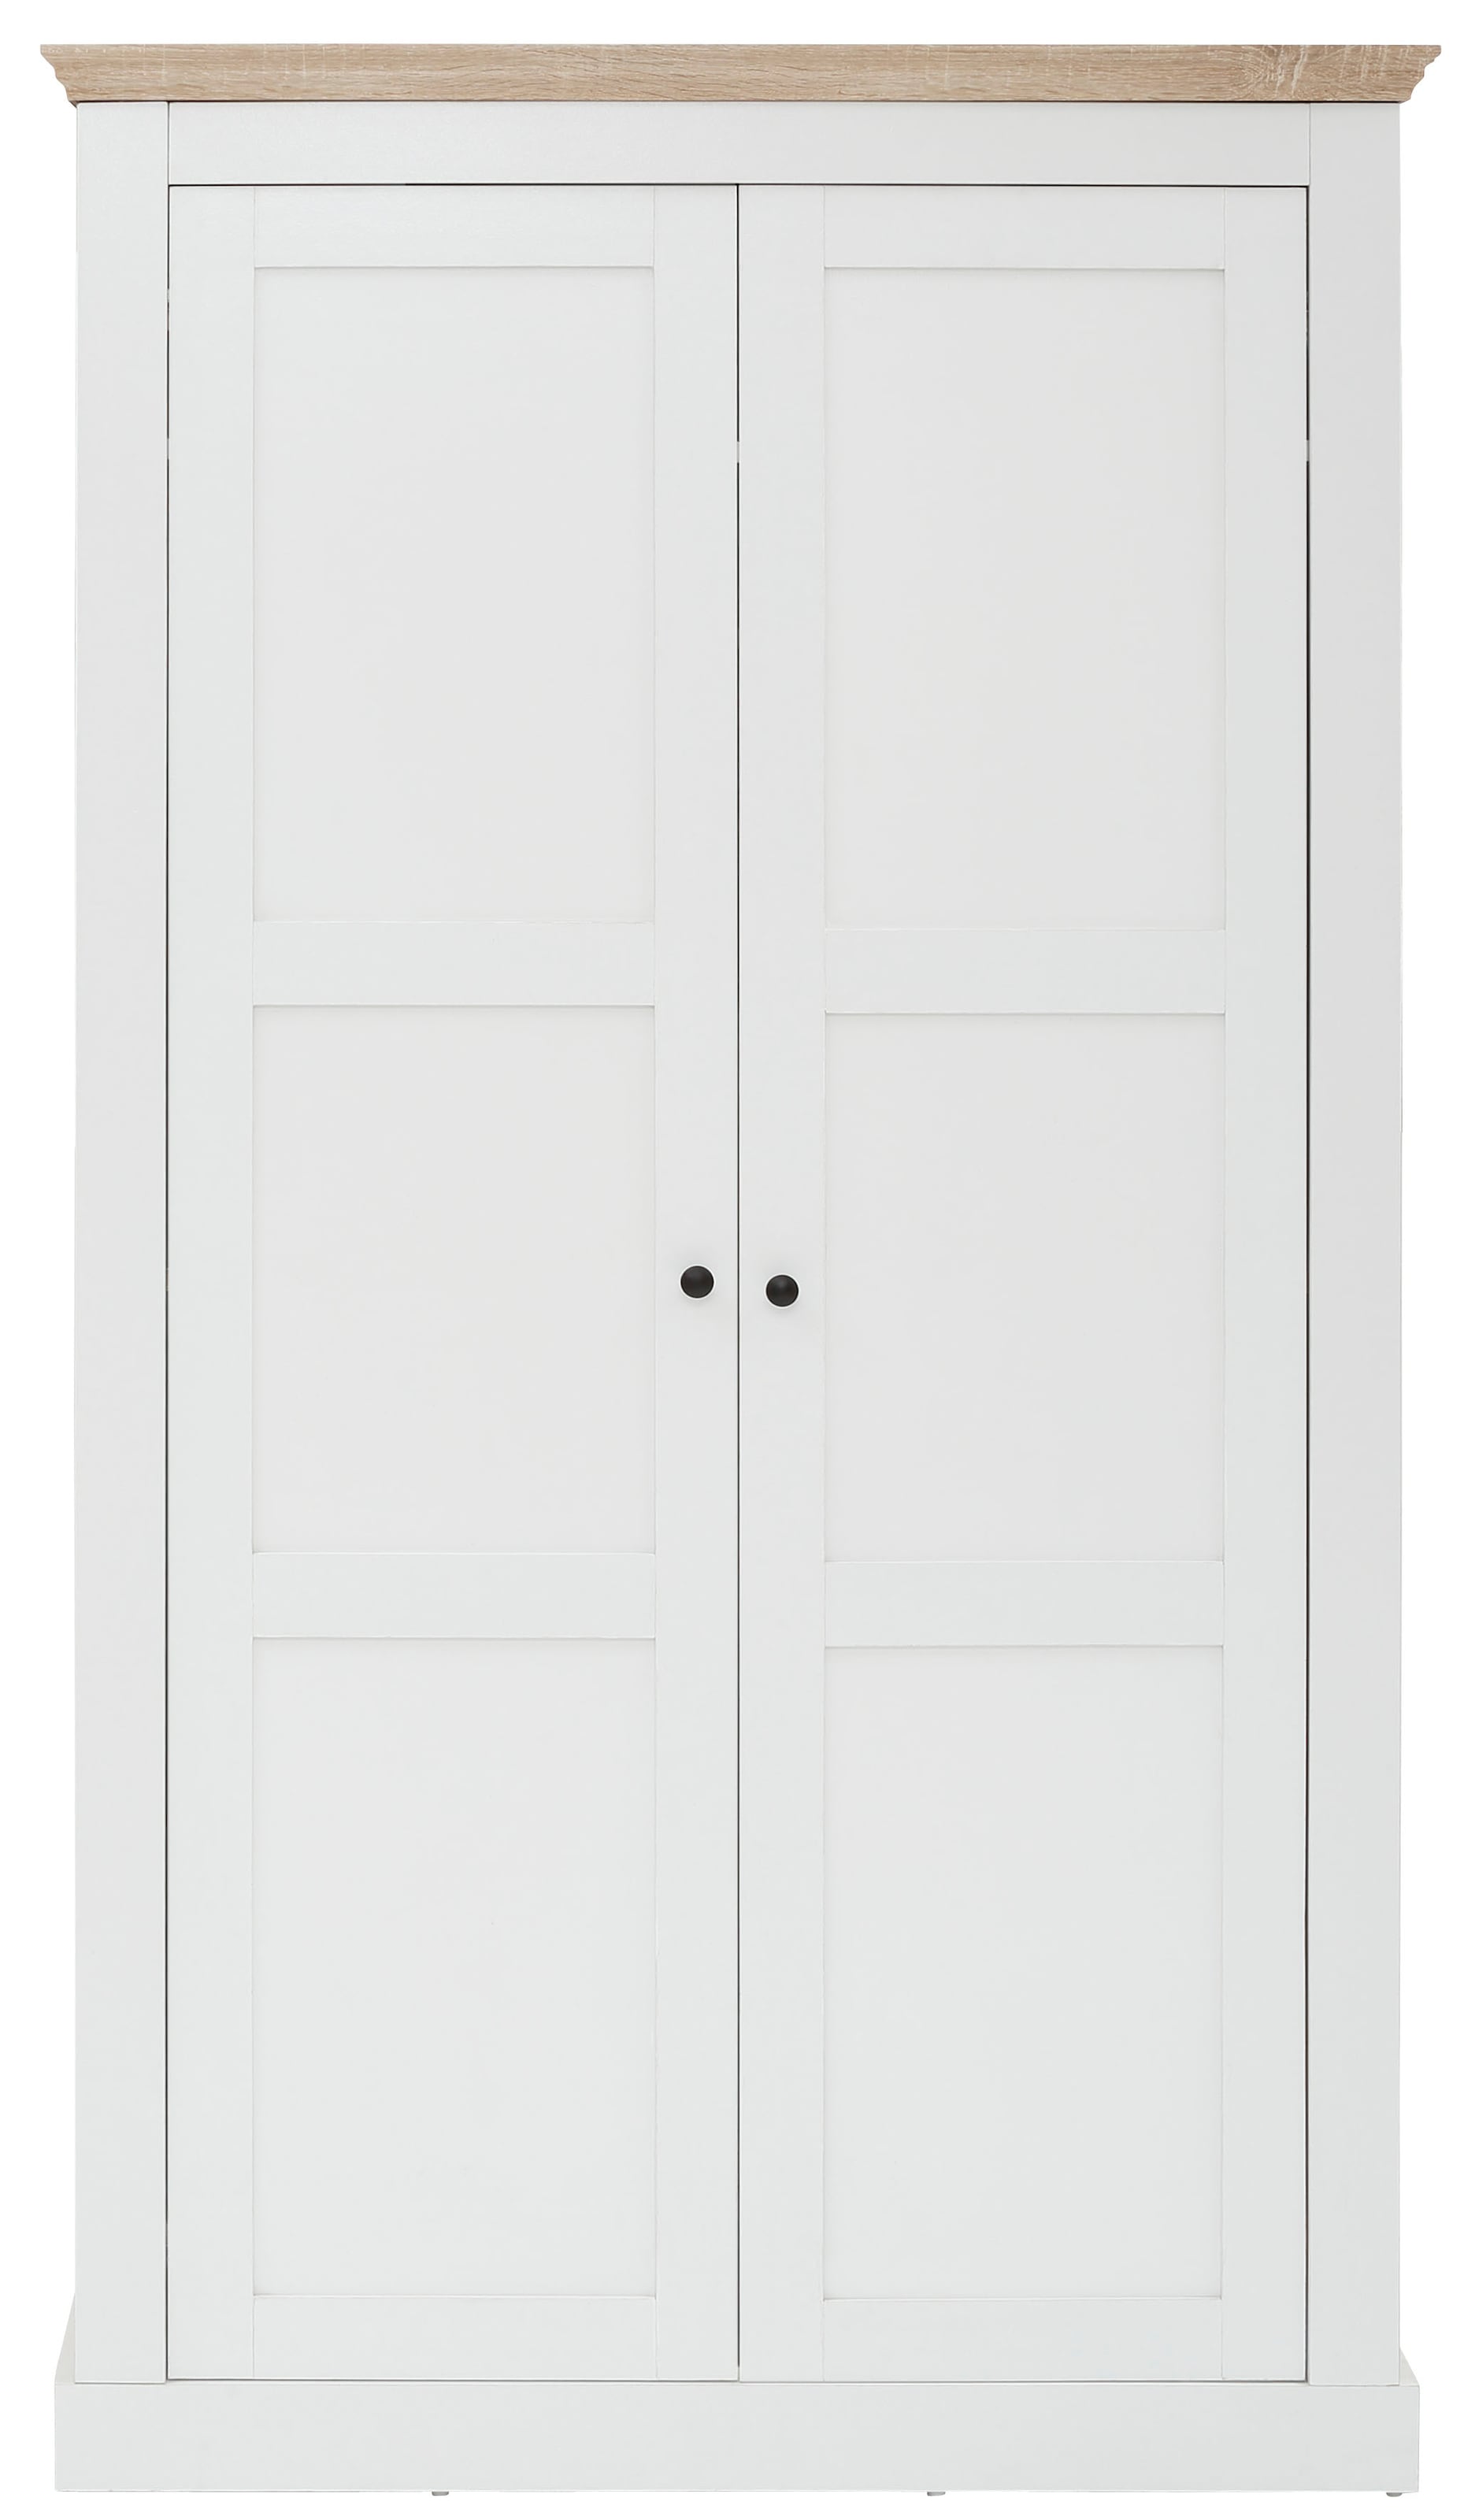 Home affaire Kleiderschrank »Clonmel«, mit Einlegeboden und Kleiderstange hinter die Türen, Höhe 180 cm